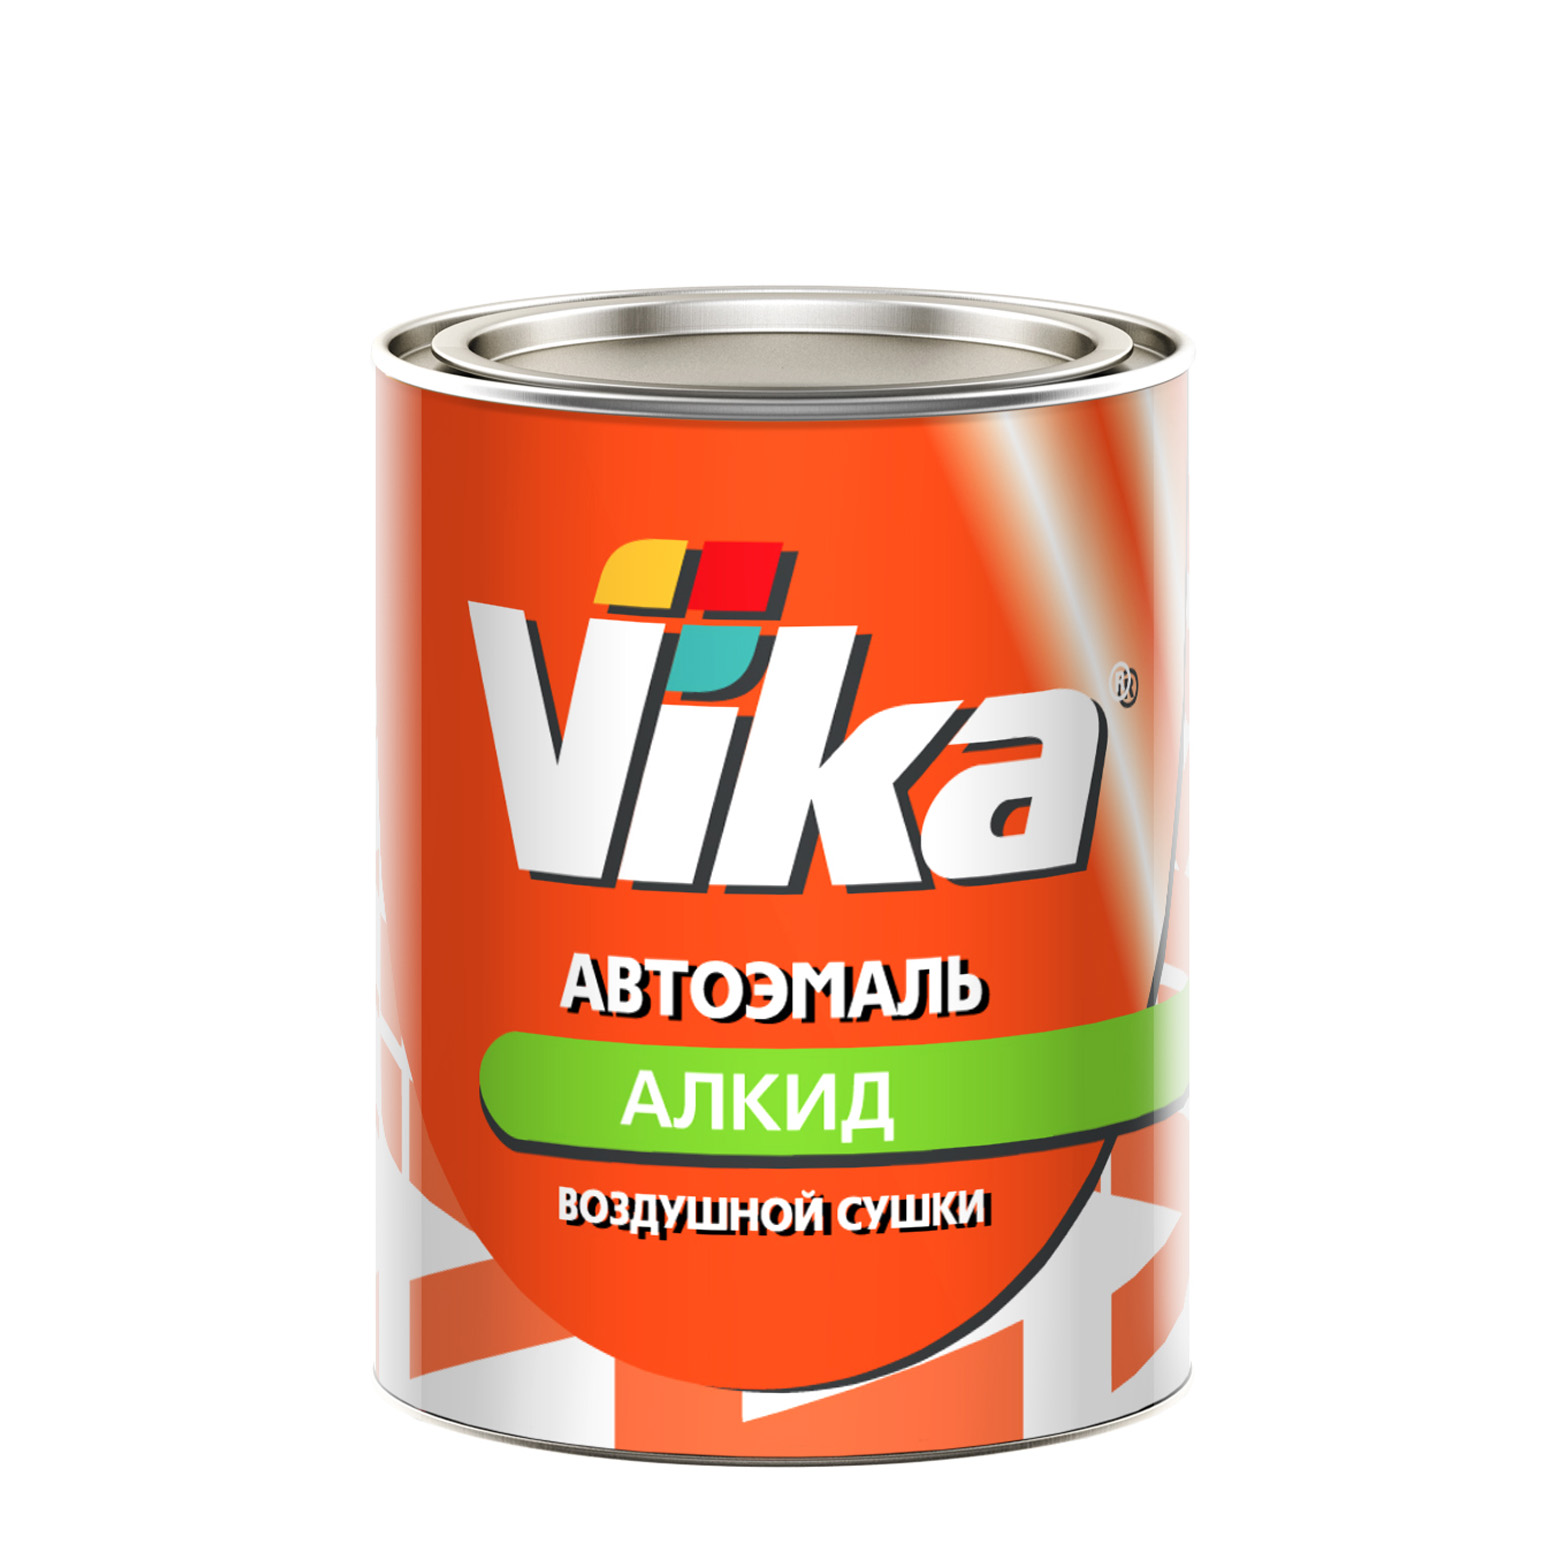 Фото 1 - Автоэмаль Vika-60, цвет КАМАЗ алкидная глянцевая естественной сушки - 0,8 кг.